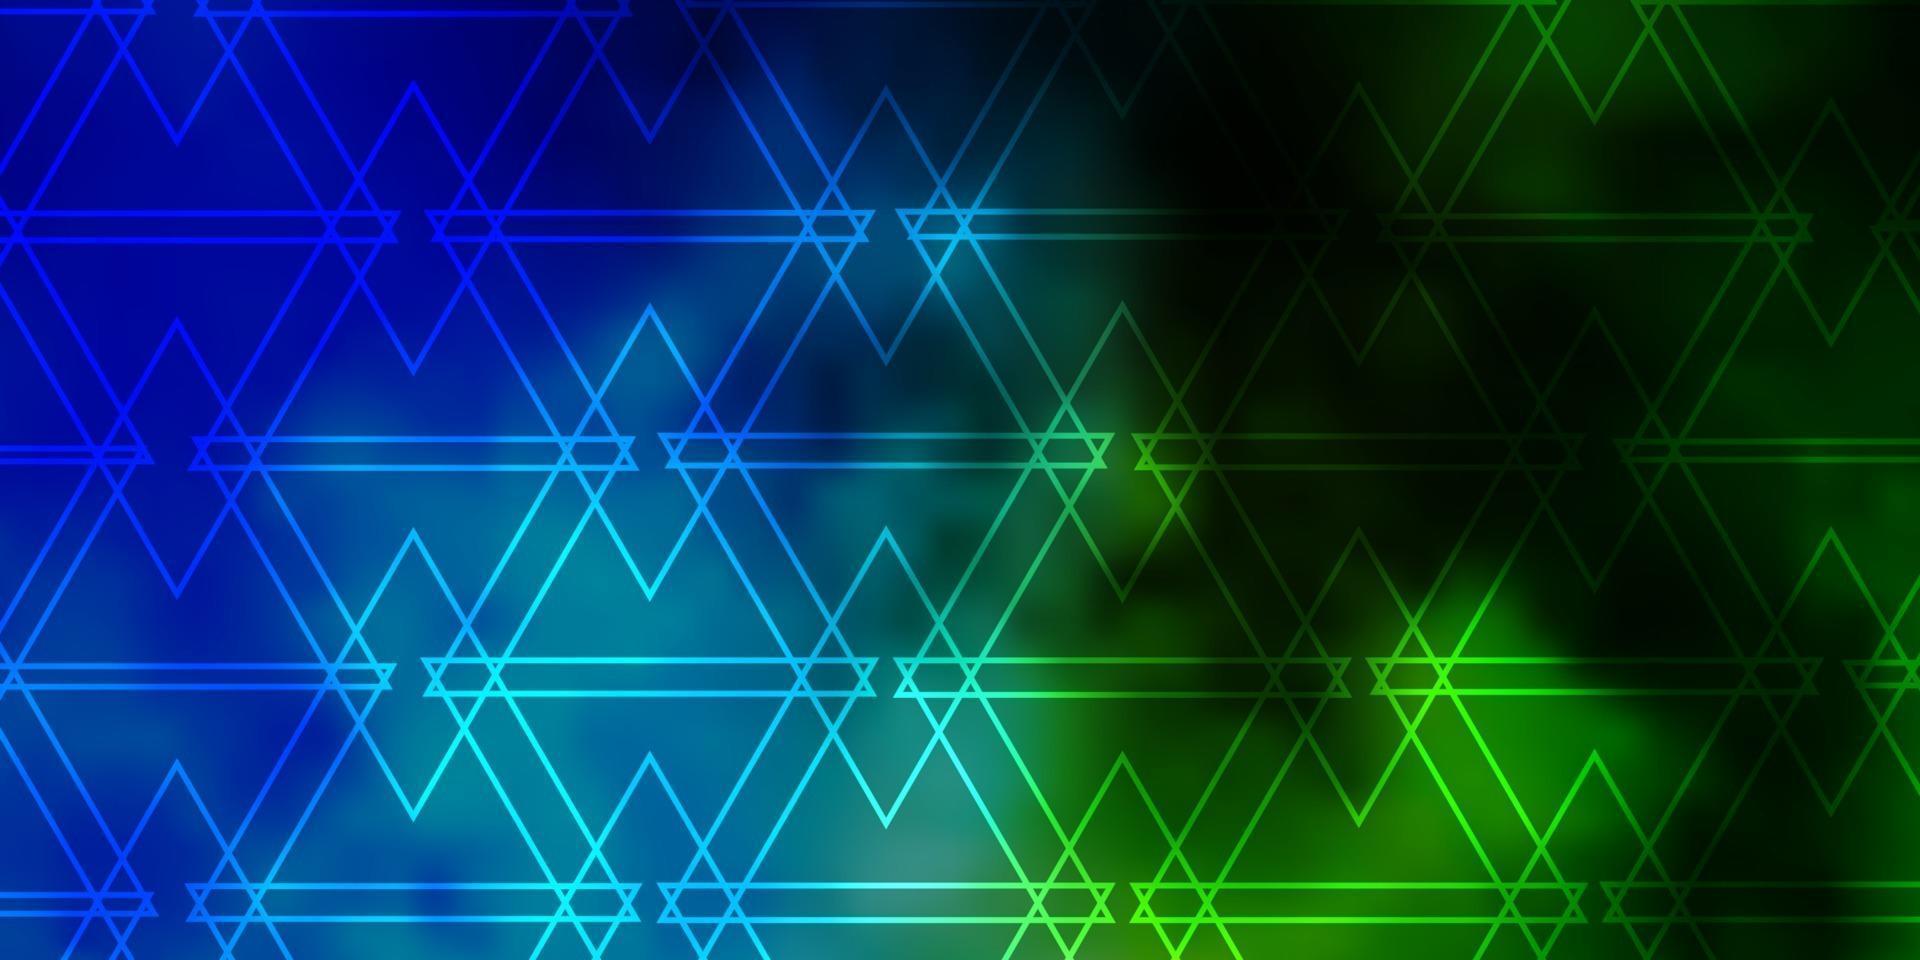 modelo de vetor azul claro e verde com cristais, triângulos.